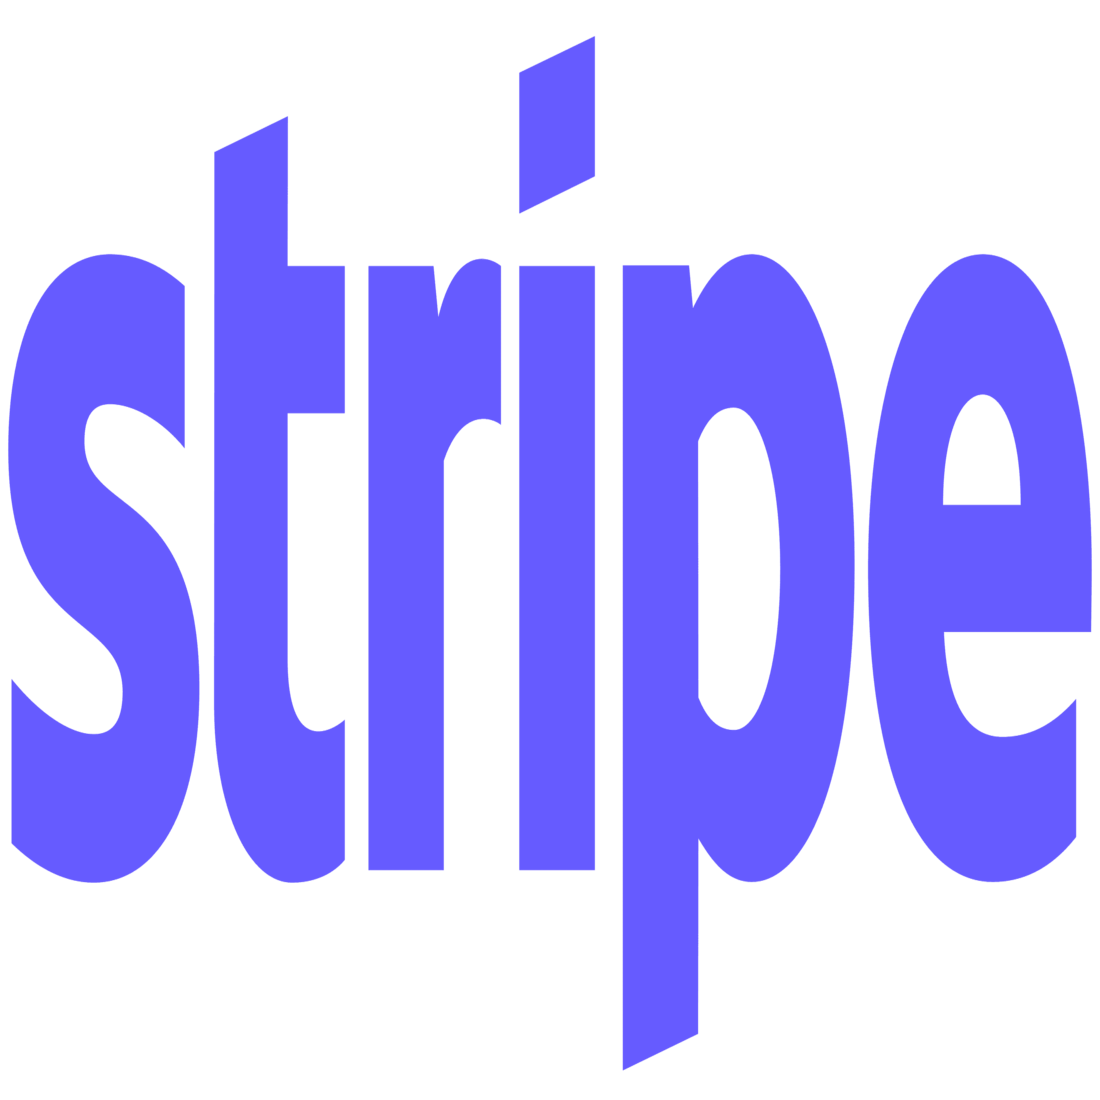 Stripe payment portal logo